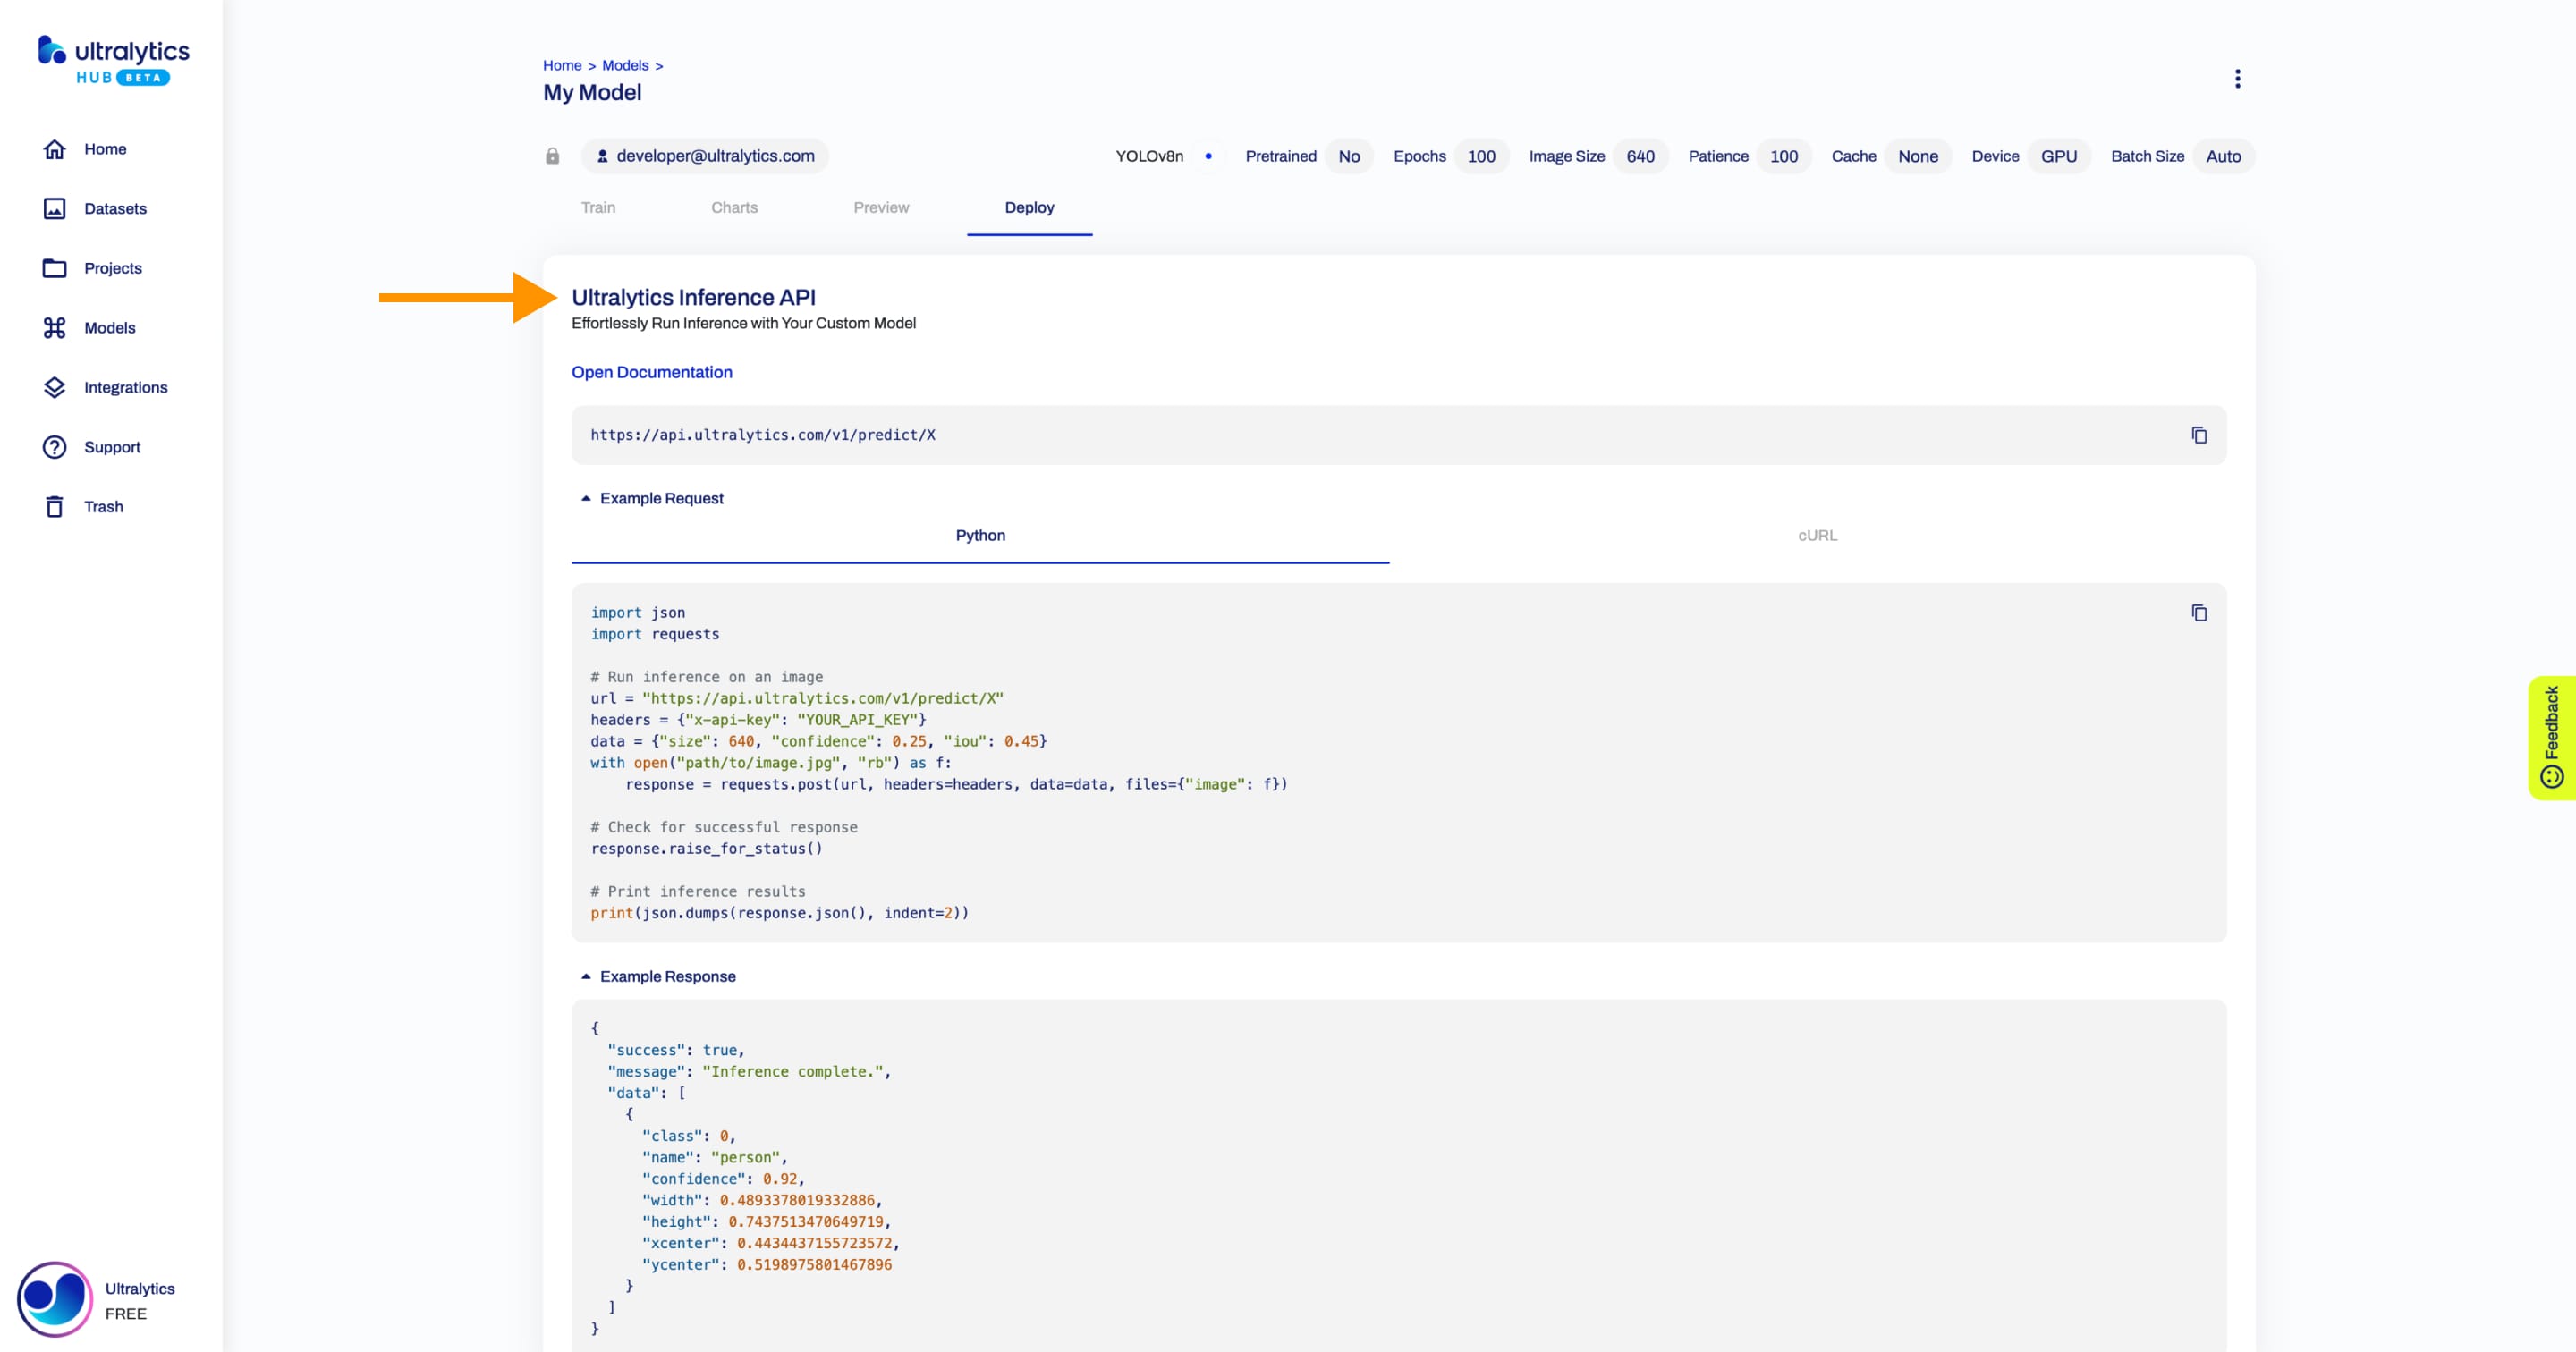 Ultralytics HUB-Screenshot der Registerkarte "Deploy" auf der Seite "Modell" mit einem Pfeil, der auf die Karte " Ultralytics Inference API" zeigt